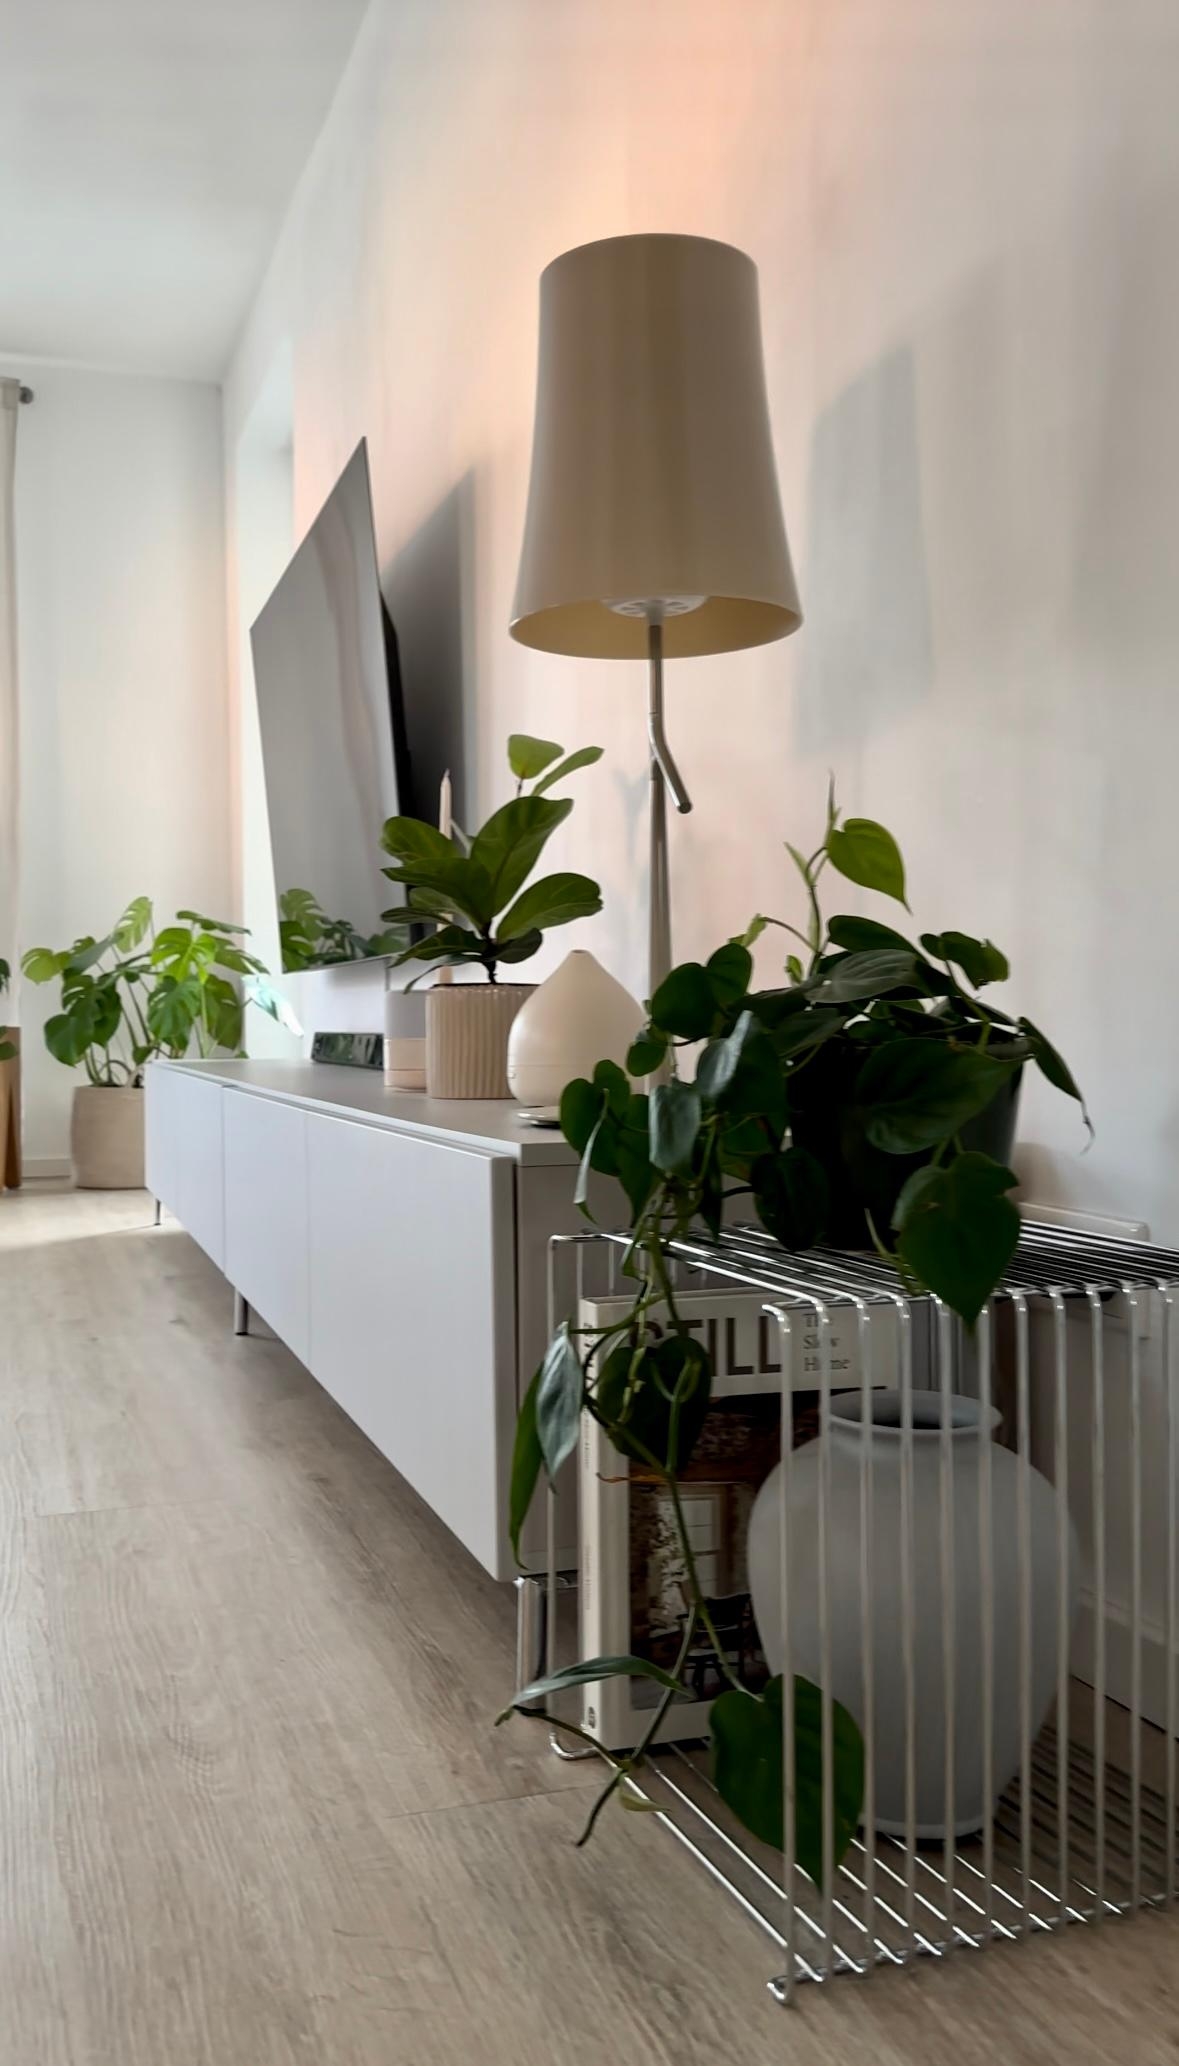 #wohnzimmer #sideboard #lowboard #stehlampe #dekoideen #tvboard #pflanzen #pflanzenliebe #couchliebt